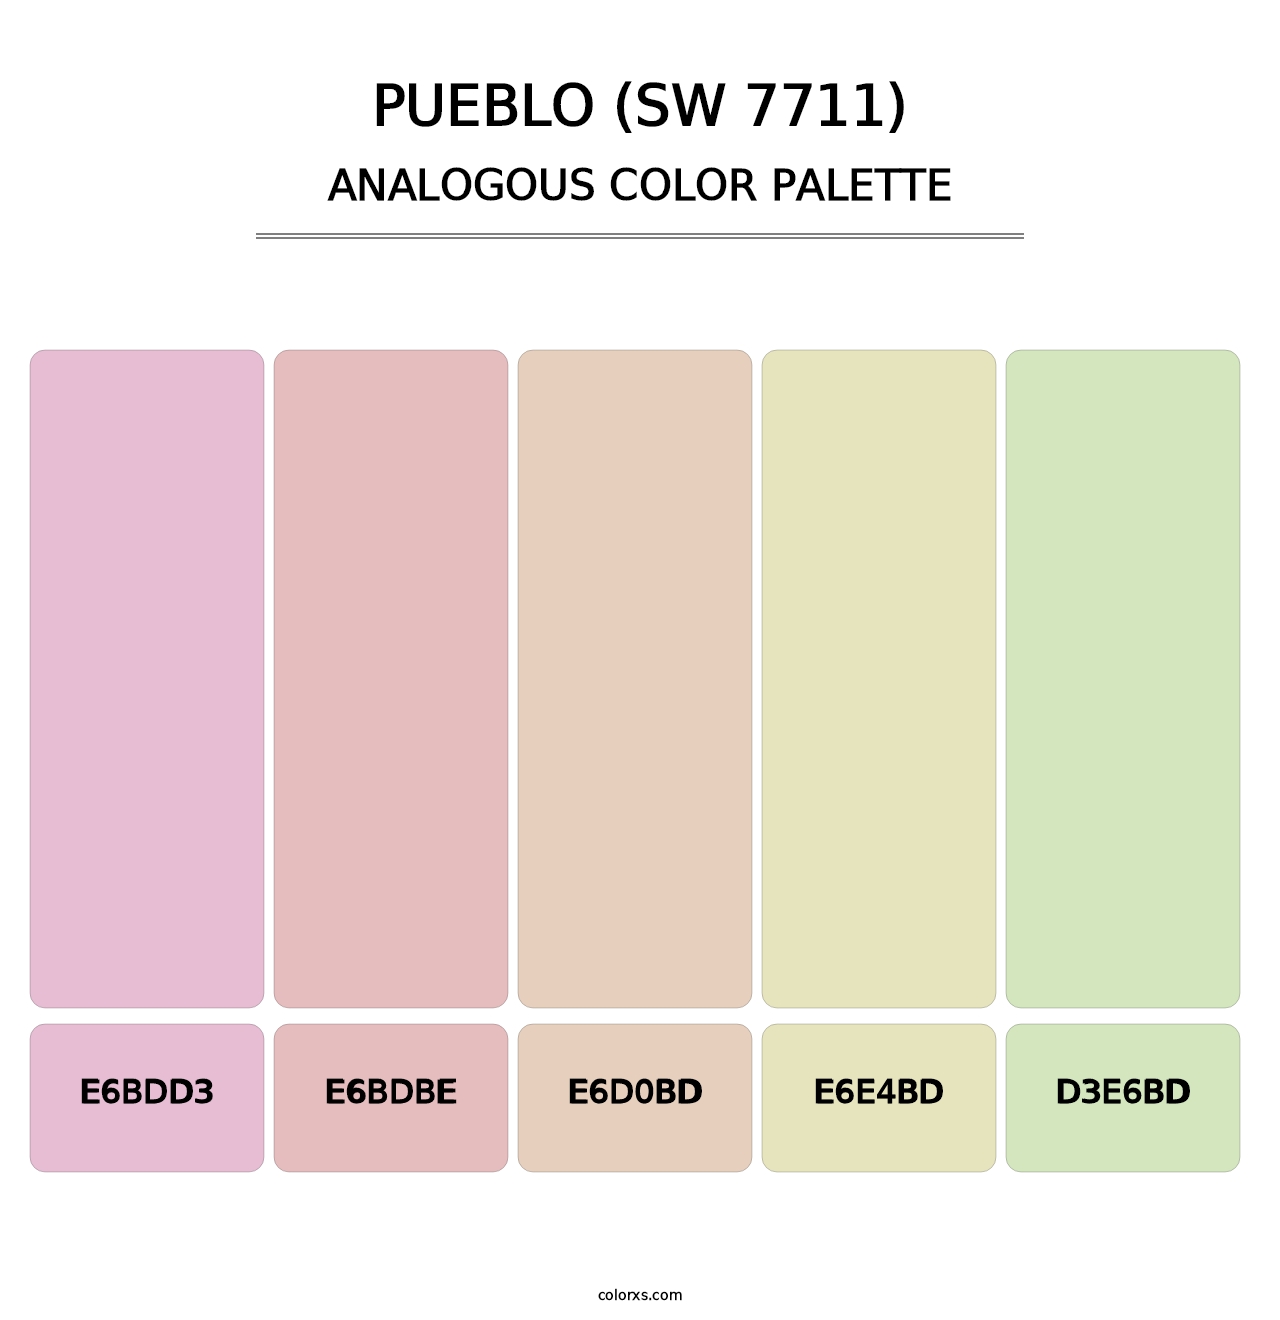 Pueblo (SW 7711) - Analogous Color Palette